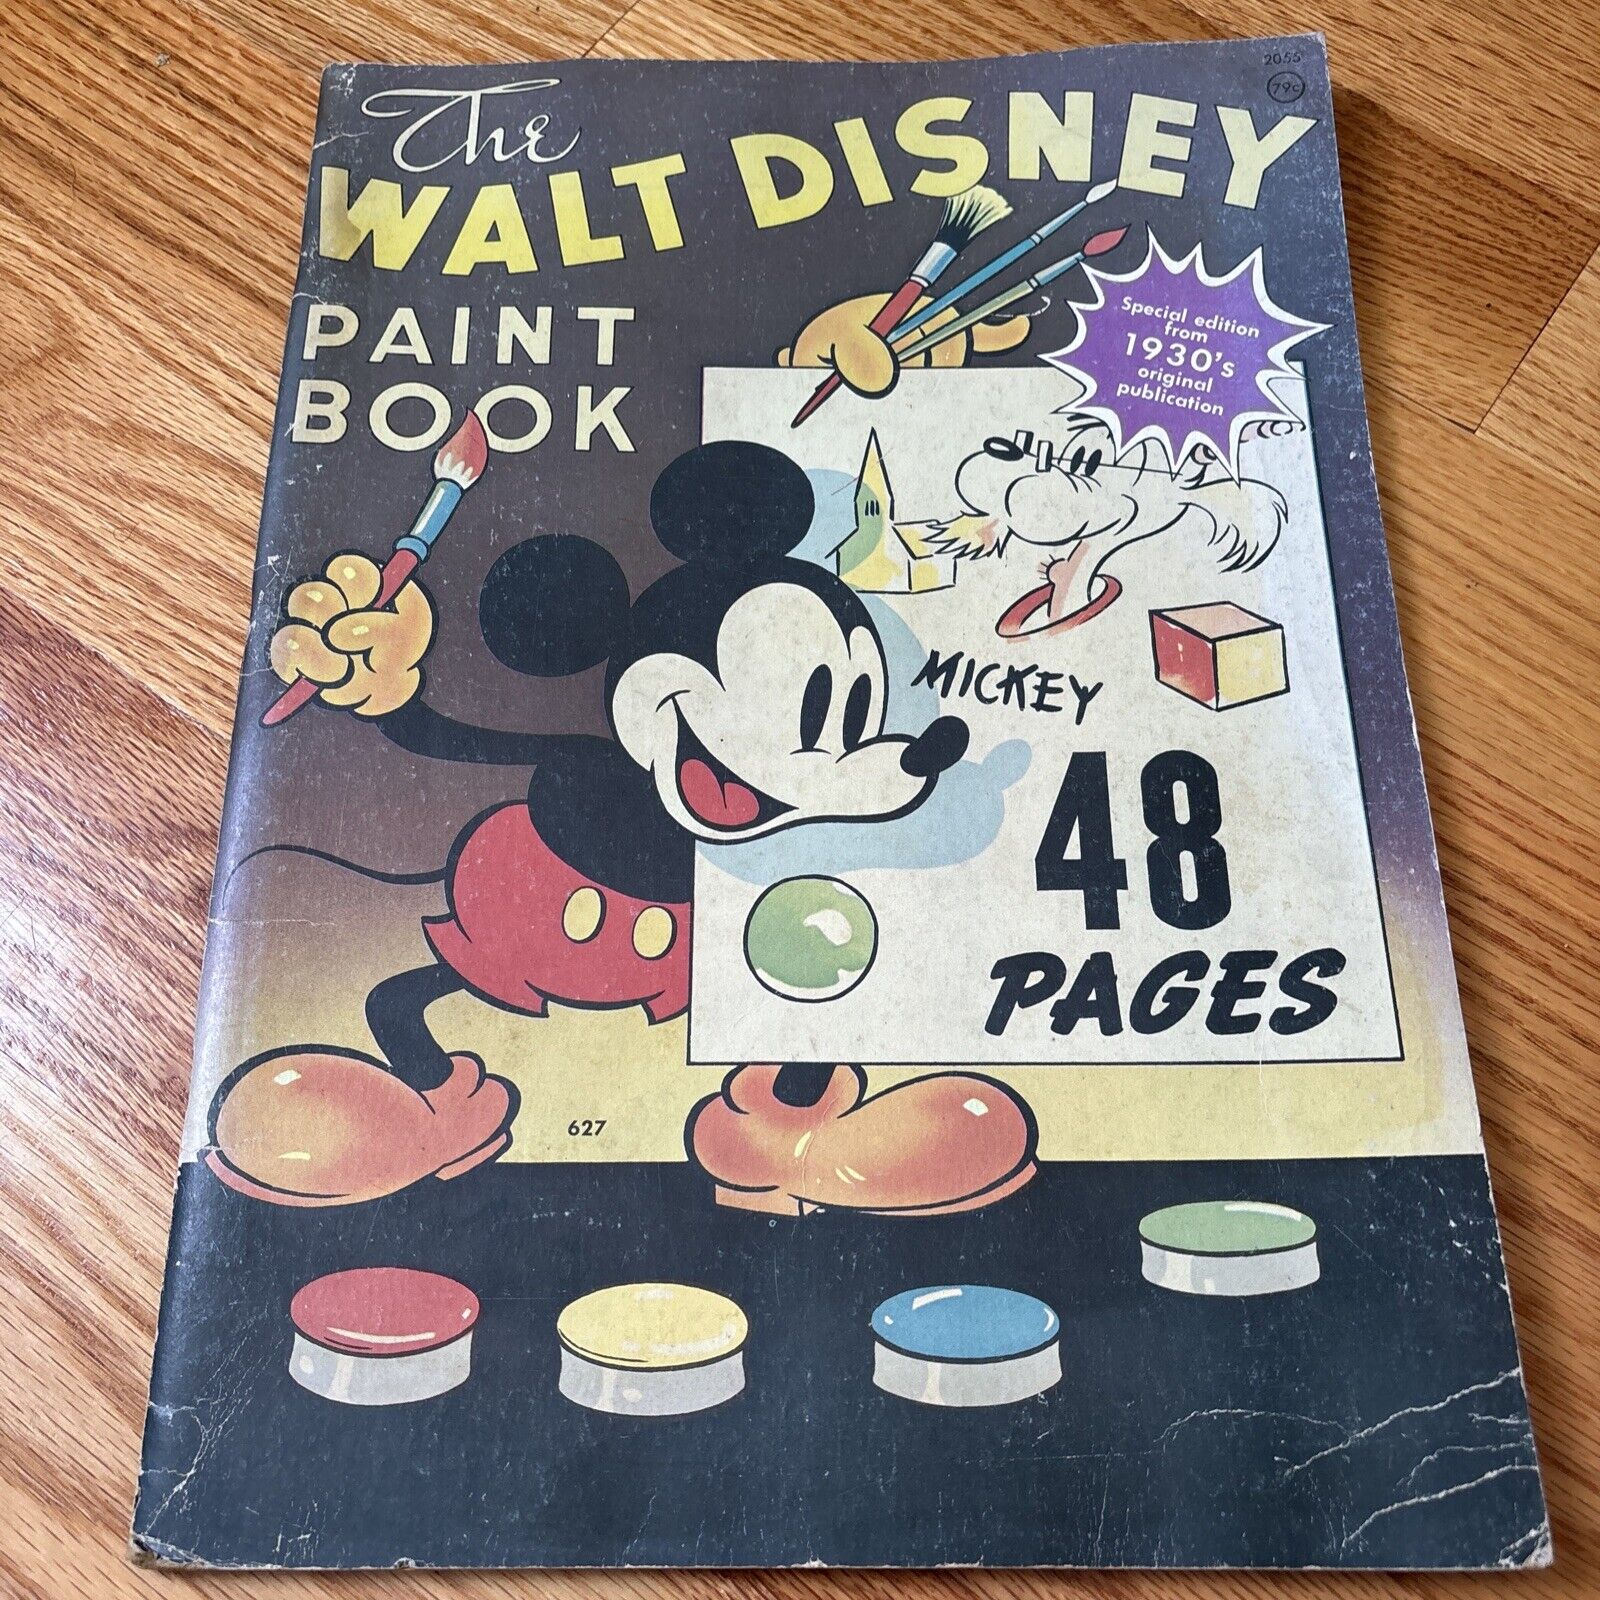 Vintage 1930's The Walt Disney Paint Book